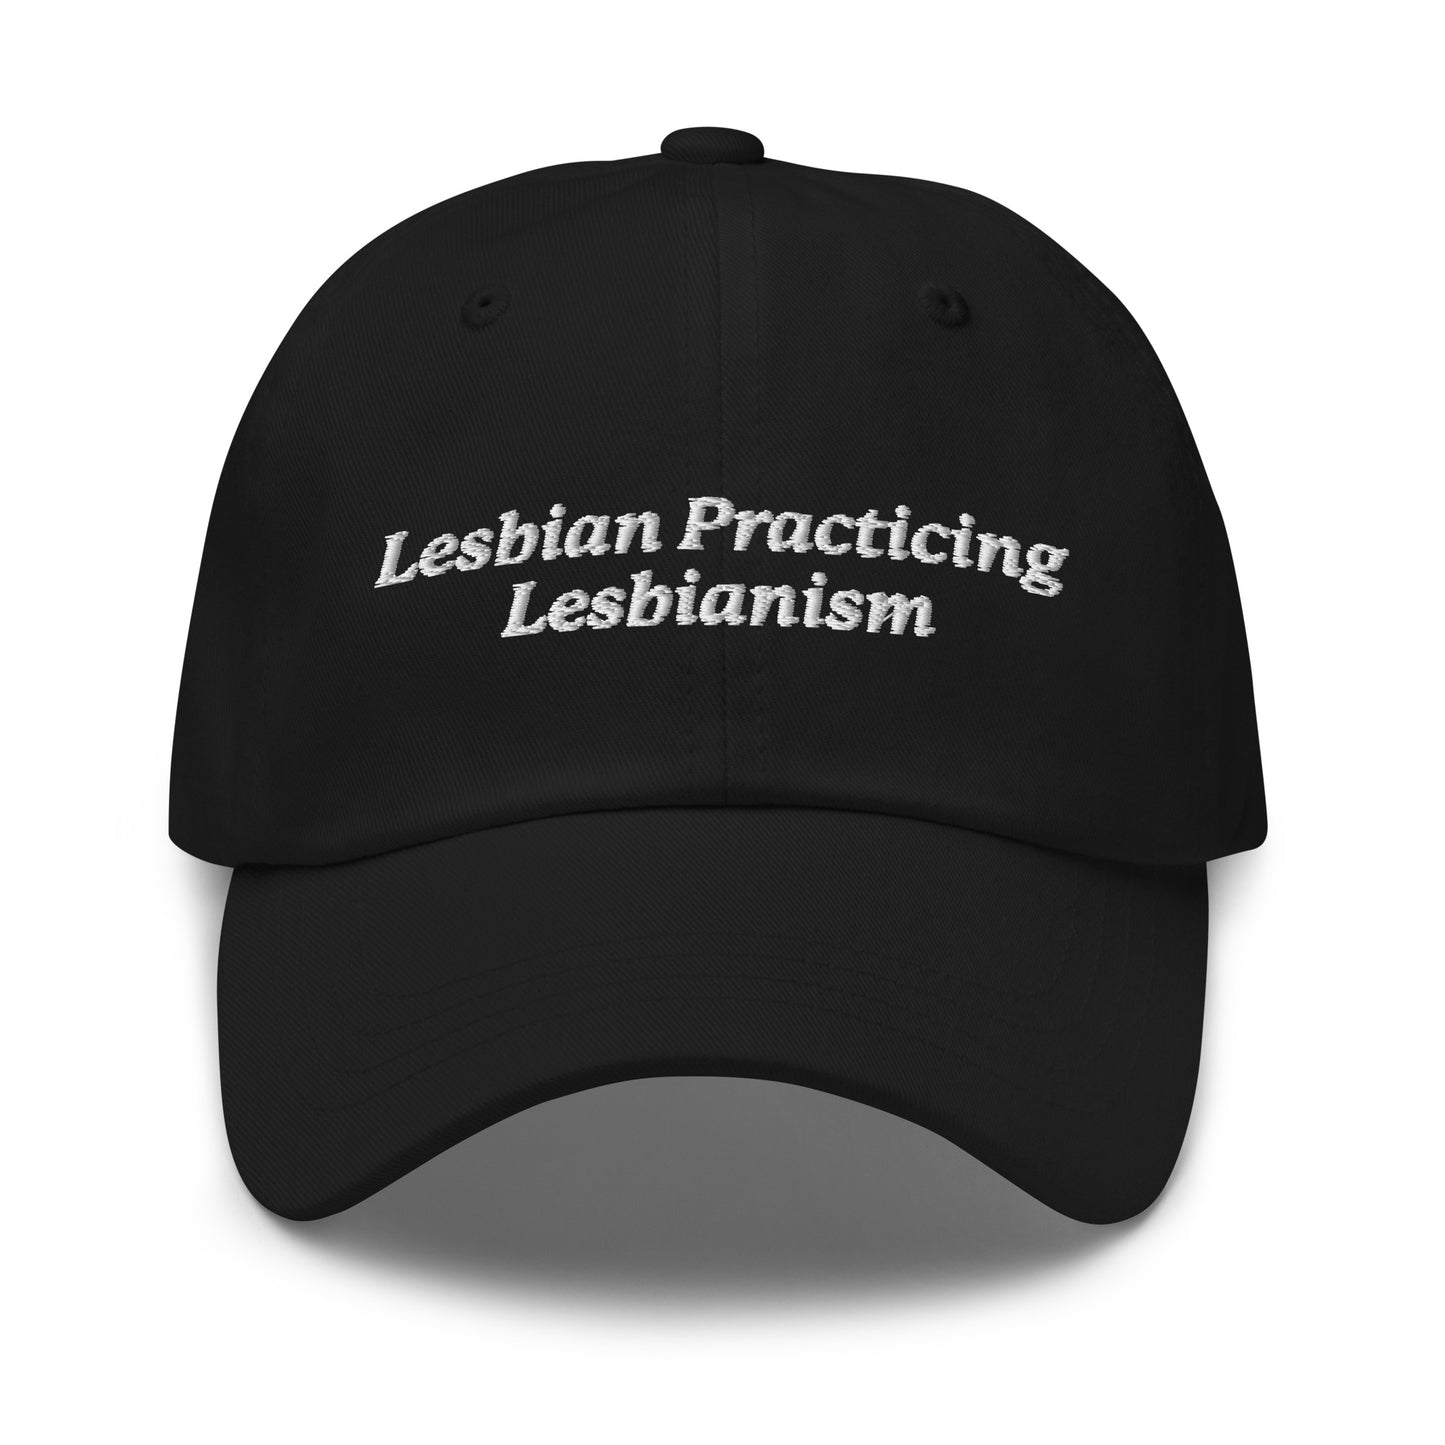 Lesbian Practicing Lesbianism hat